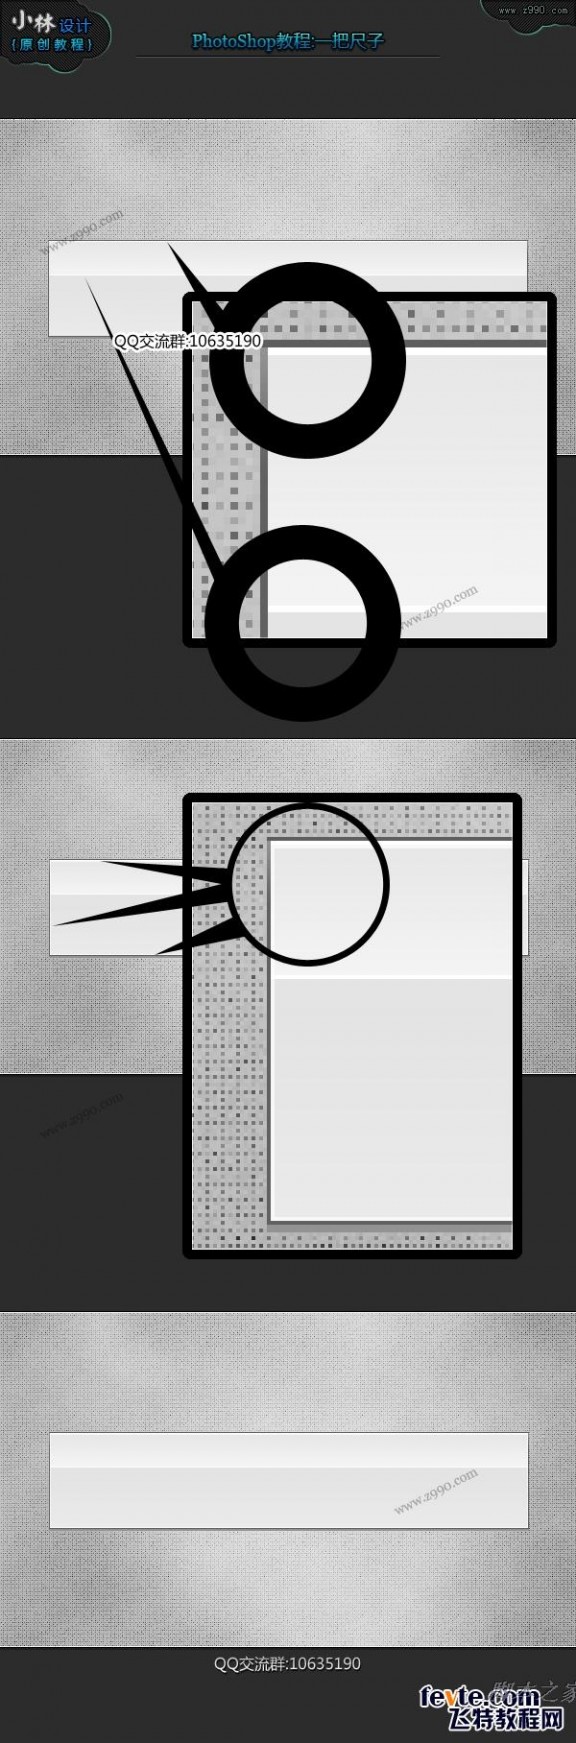 photoshop鼠绘逼真的透明尺子教程 